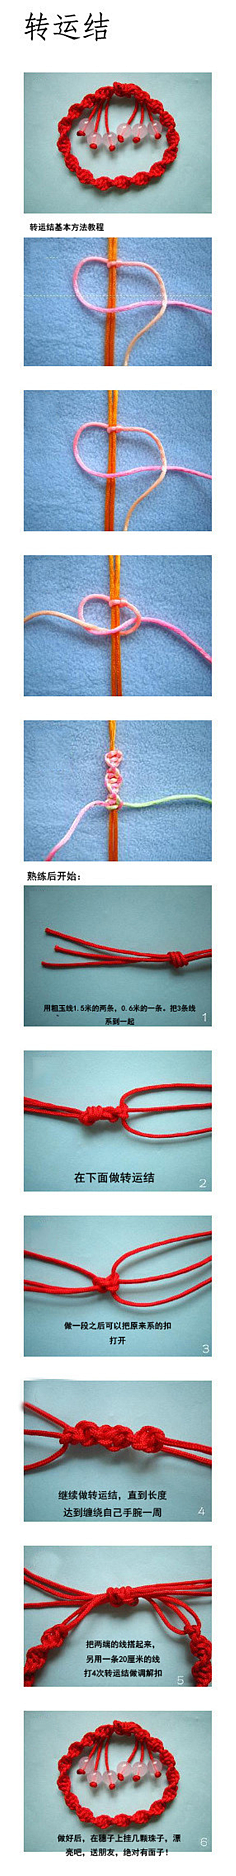 陈花喜采集到手工编绳。